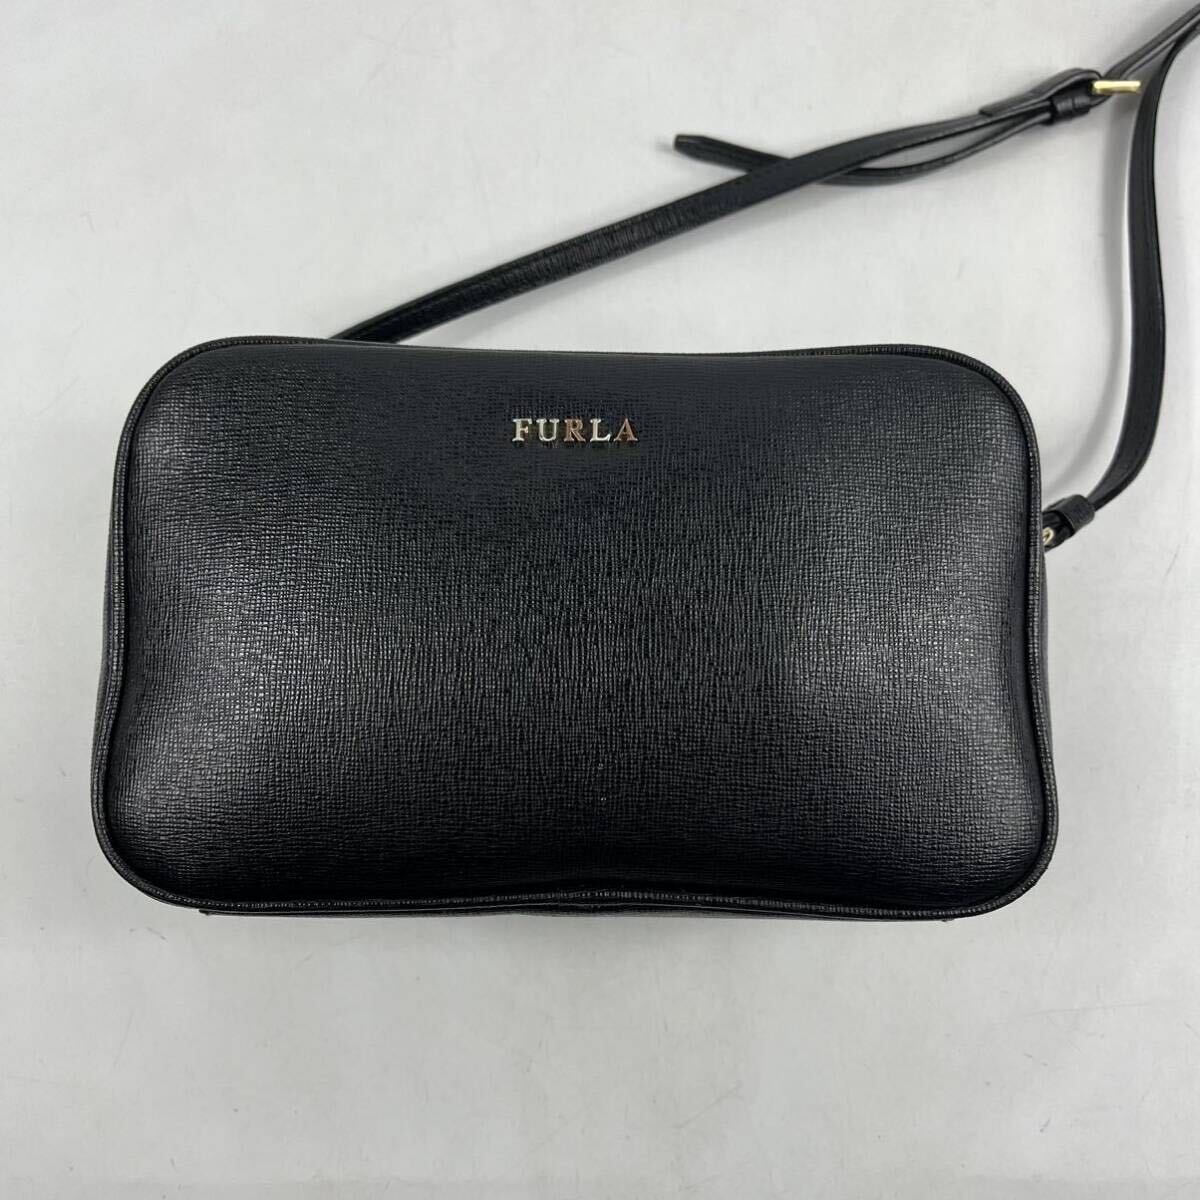 1 иен ~[ прекрасный товар ] FURLA Furla сумка на плечо кожа черный чёрный камера сумка наклонный .. двойной Zip Logo Cross сумка "body" сумка 